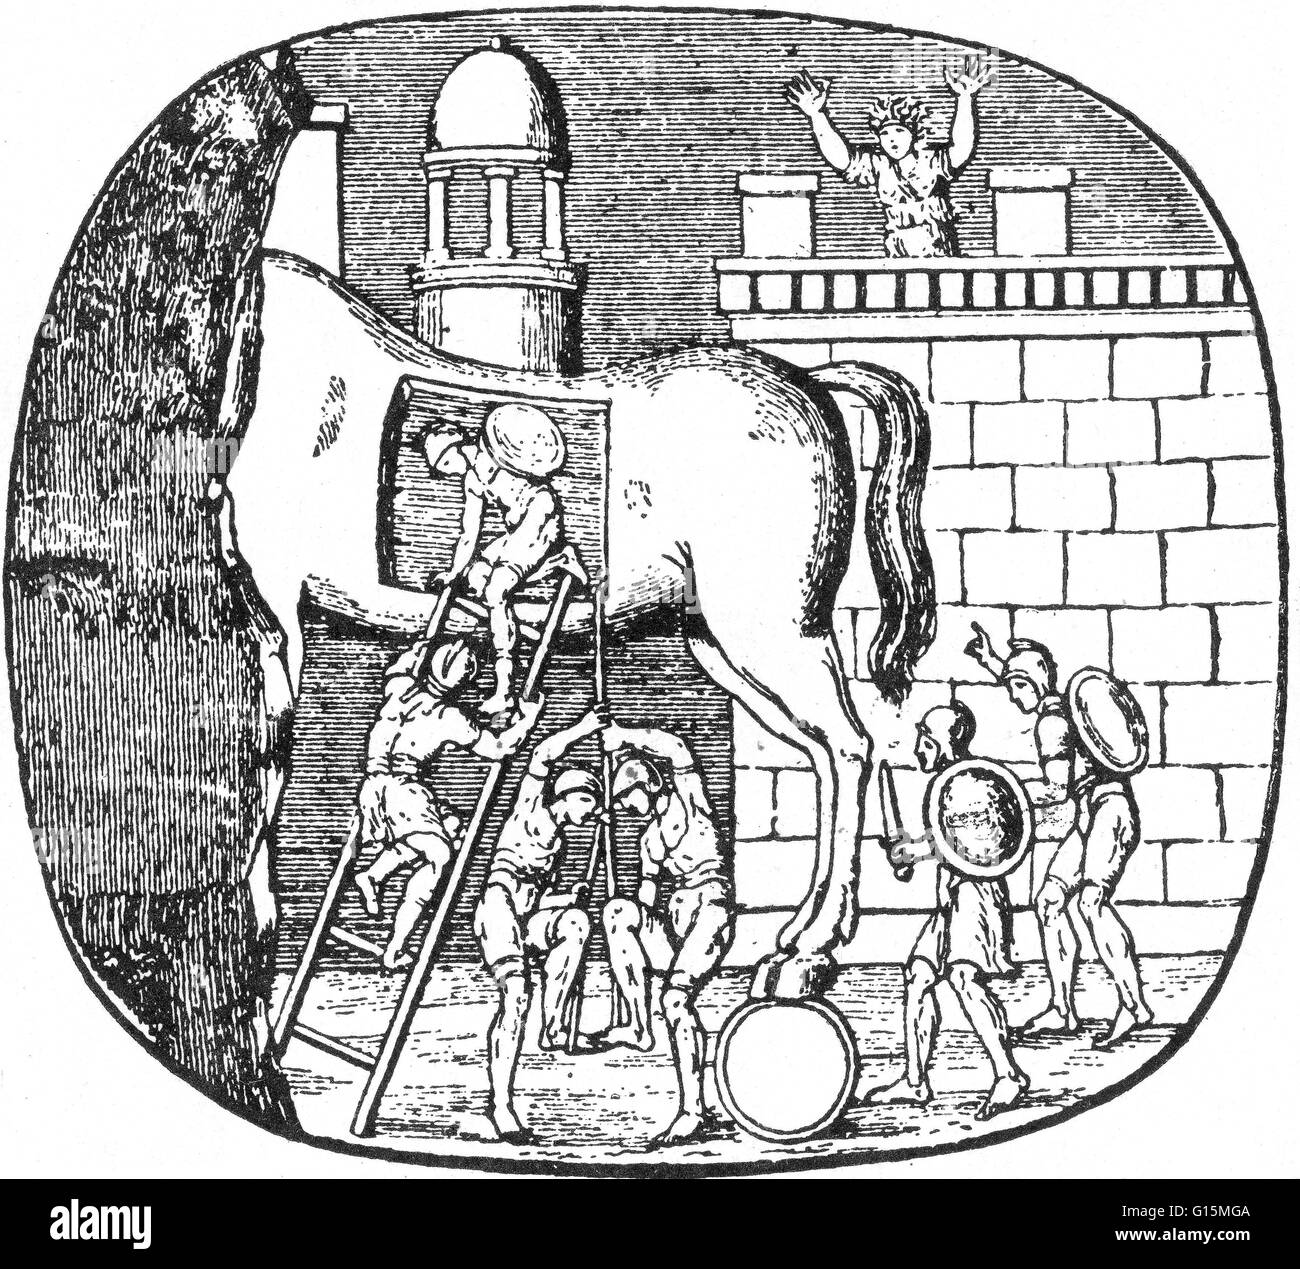 Le cheval de Troie est une histoire de la guerre de Troie sur le stratagème qui a permis aux Grecs pour enfin entrer dans la ville de Troie et de mettre fin au conflit. Dans la version canonique, après une 10-ans de siège, les Grecs ont construit un énorme cheval de bois, et l'h Banque D'Images